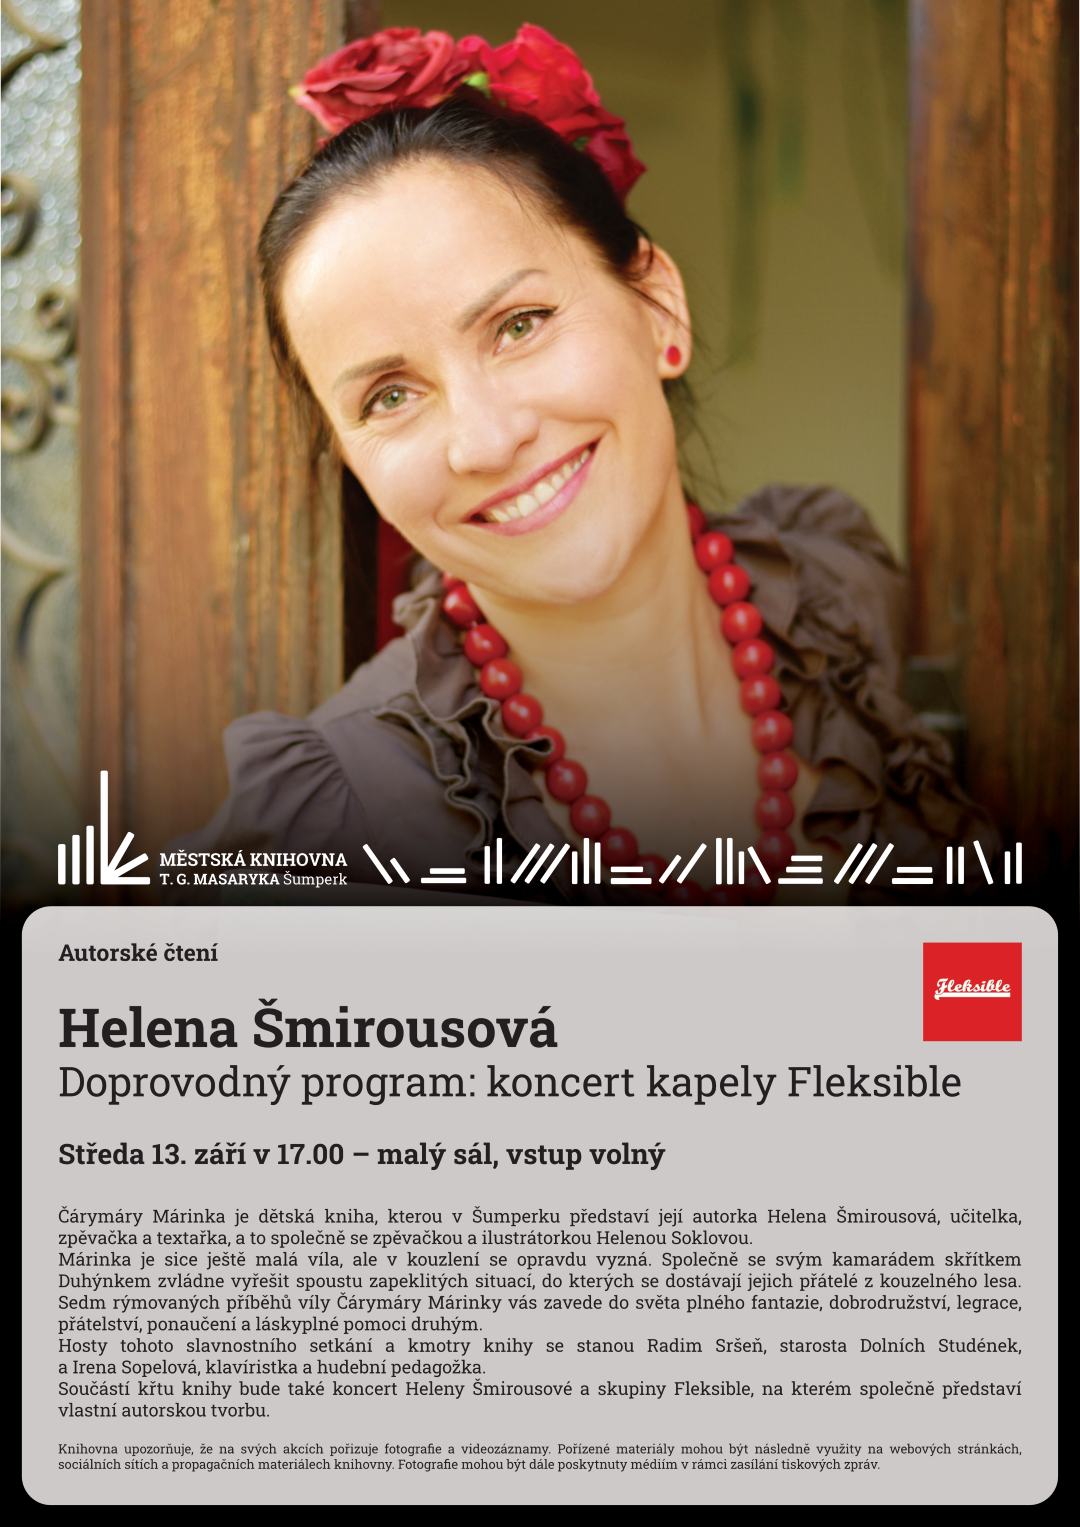 Plakát pro autorské čtení Heleny Šmirousové